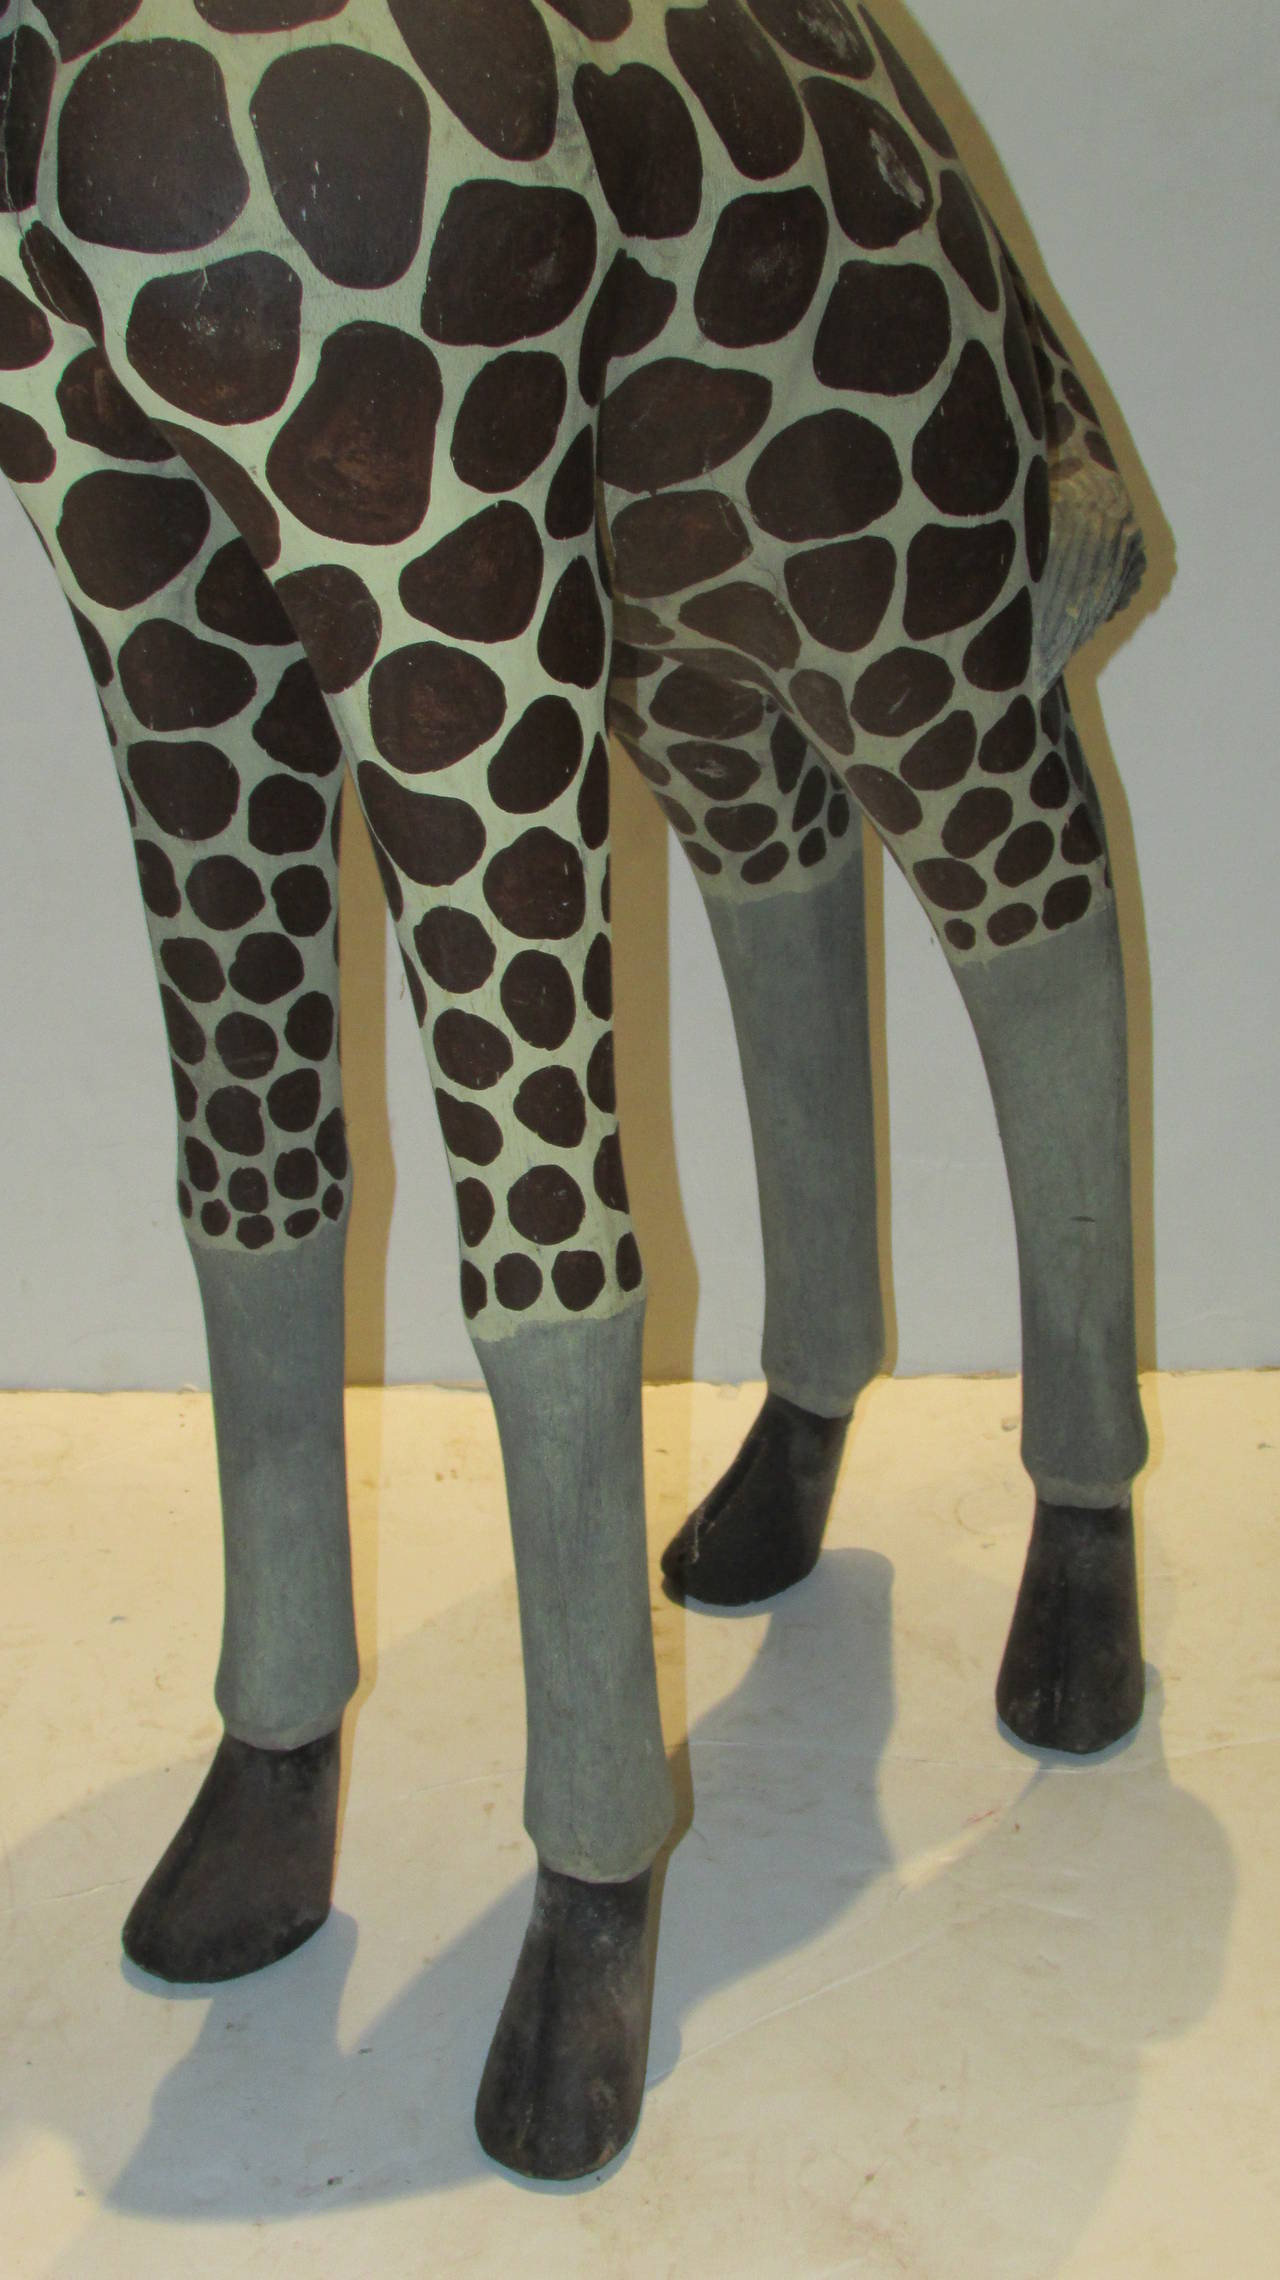 6 foot wooden giraffe